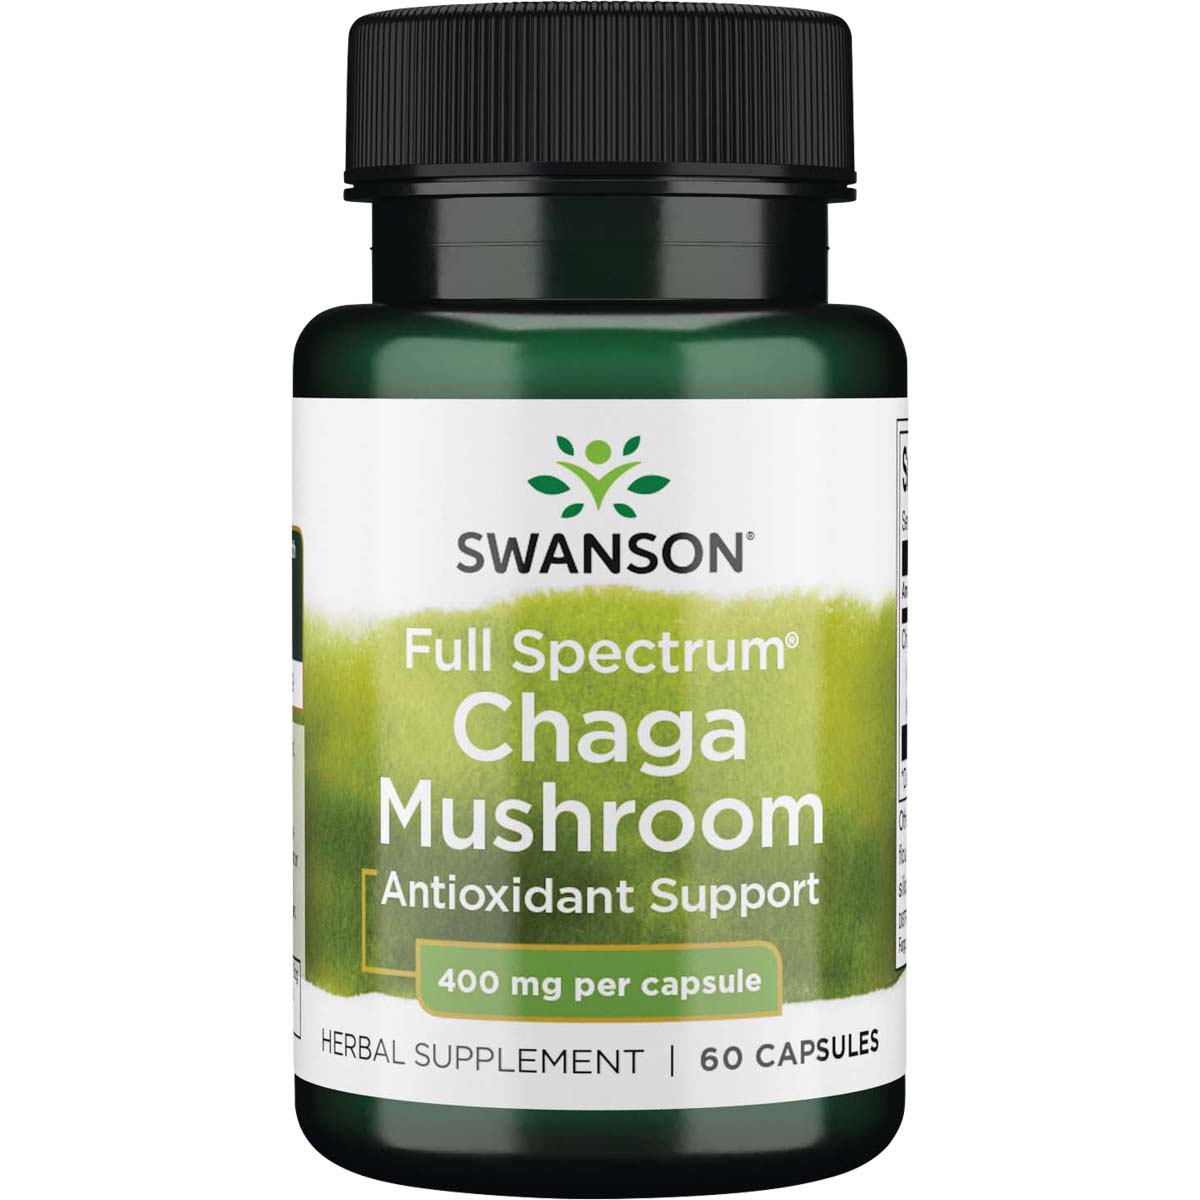 Swanson Full Spectrum Chaga Mushroom, 400 mg, 60 Capsules